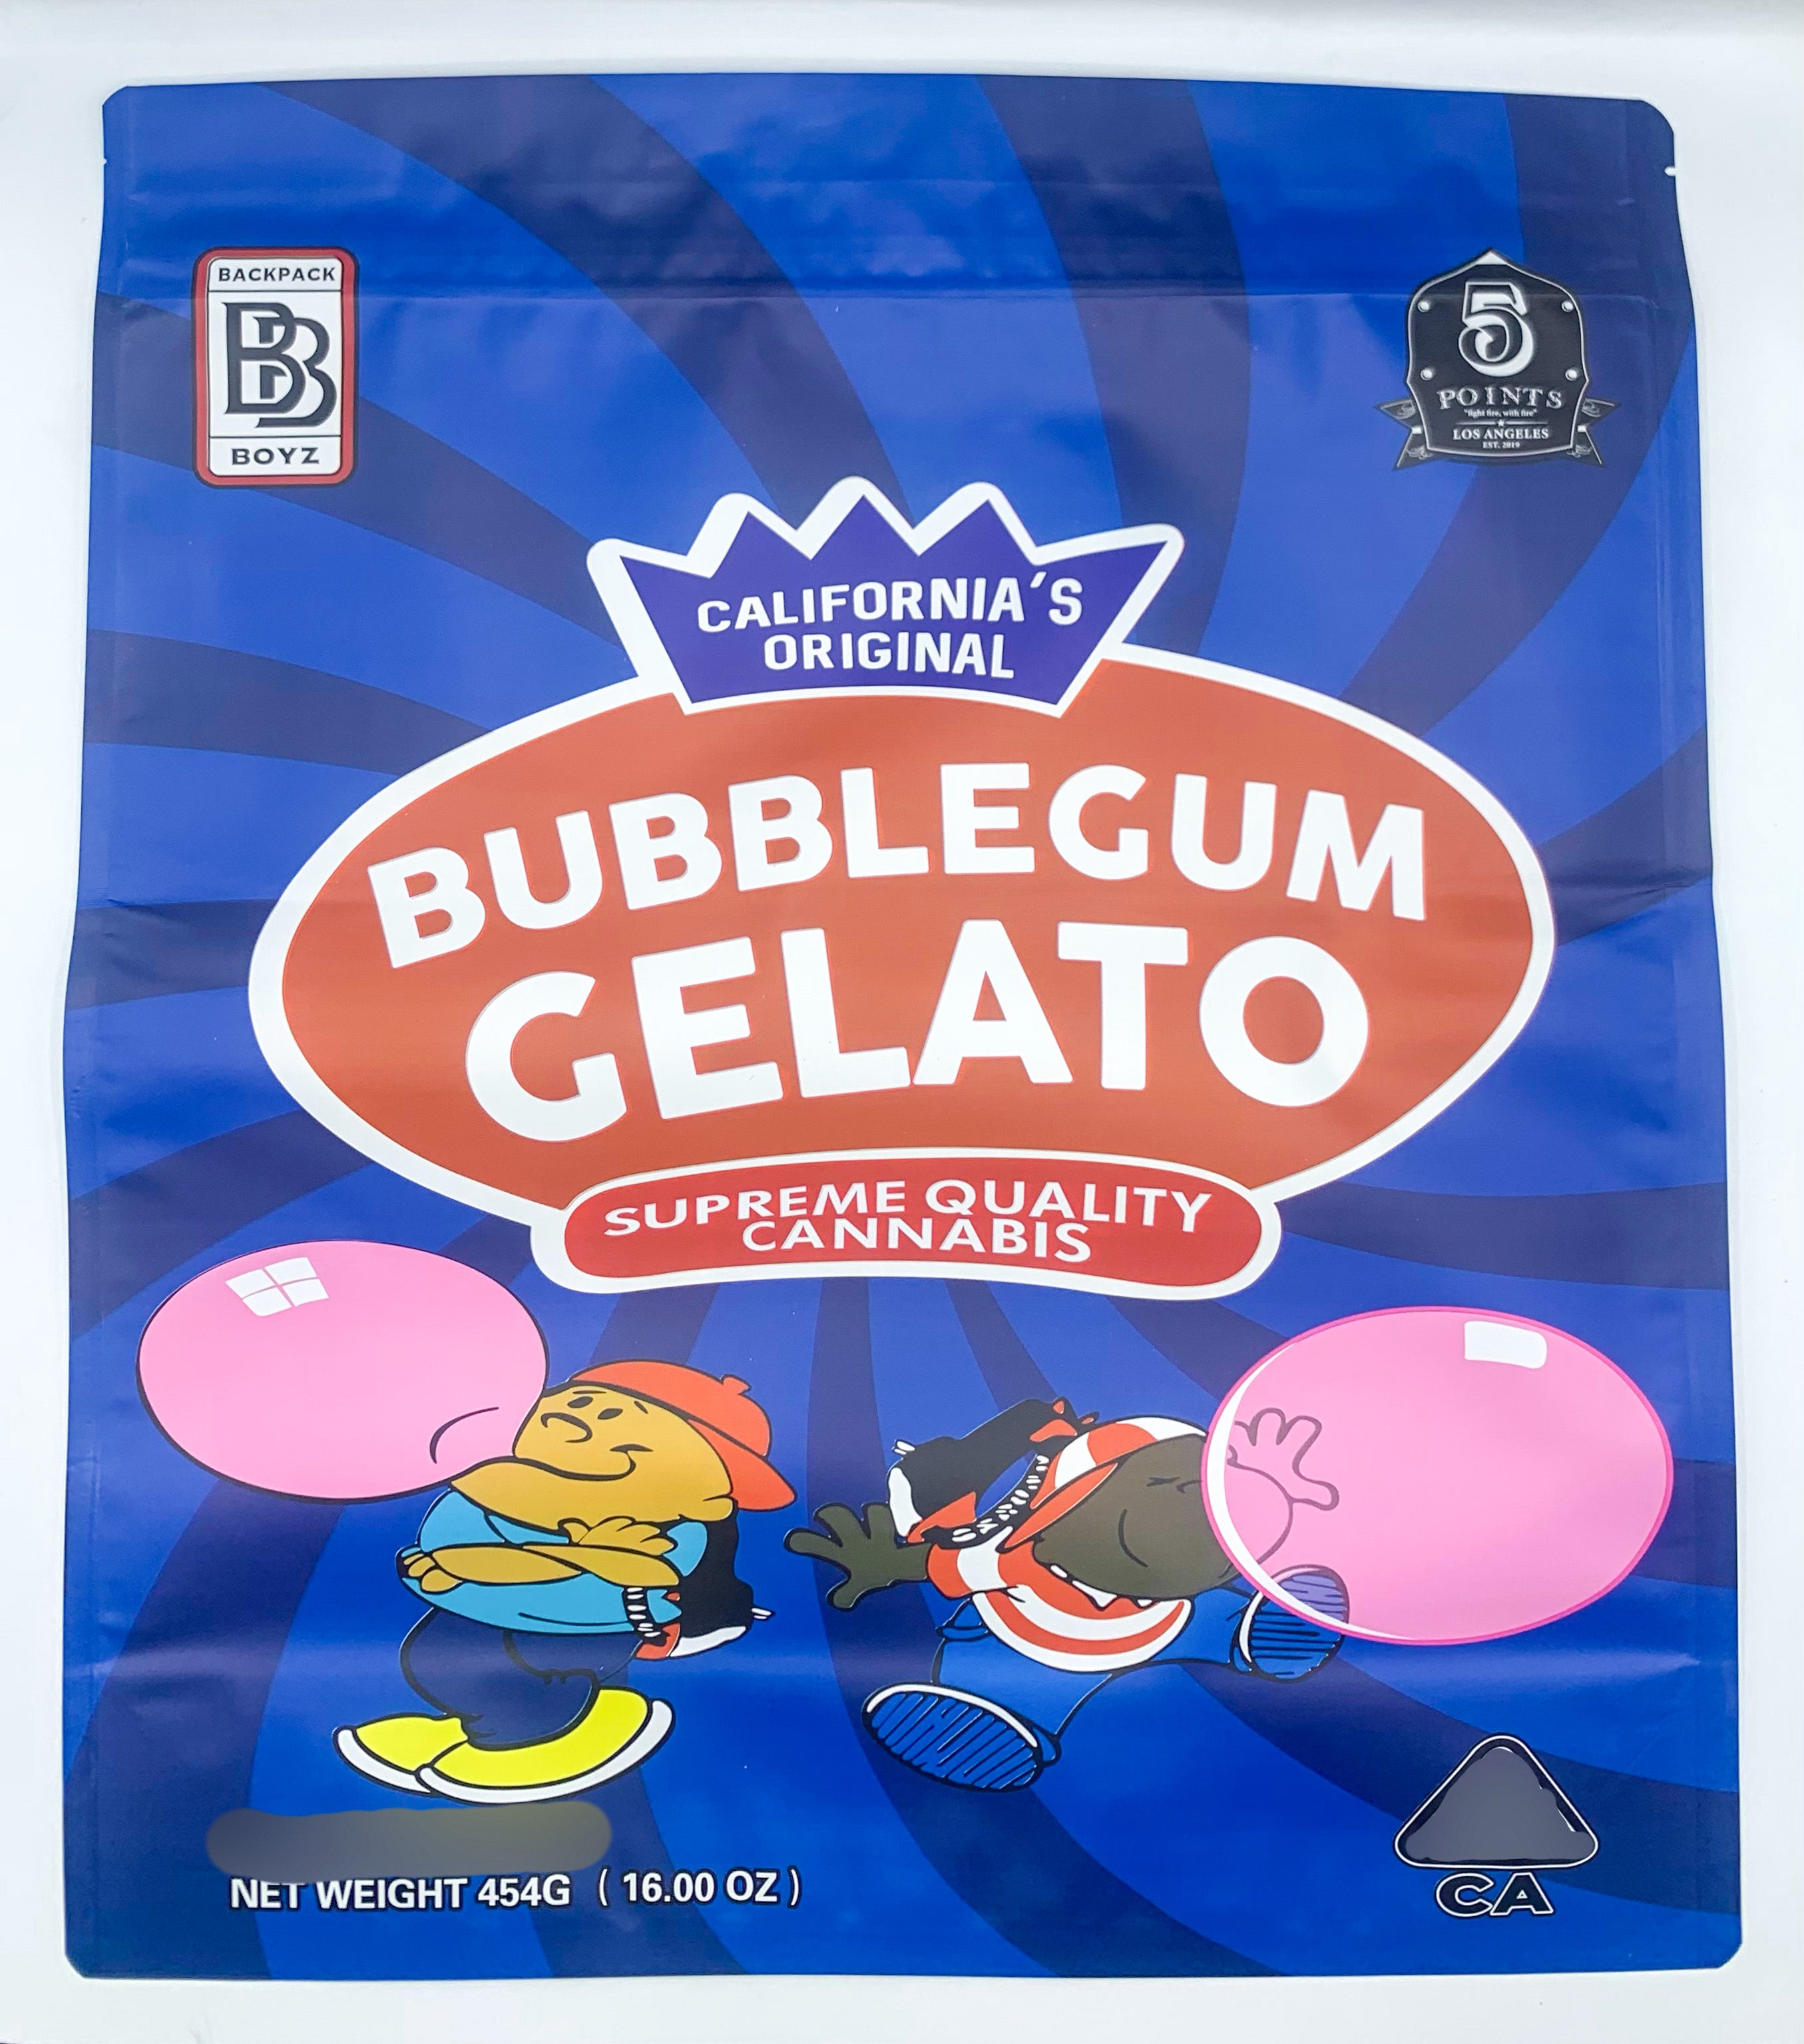 Backpack Boyz bubblegum Gelato 1 pound (16oz) Mylar Bags